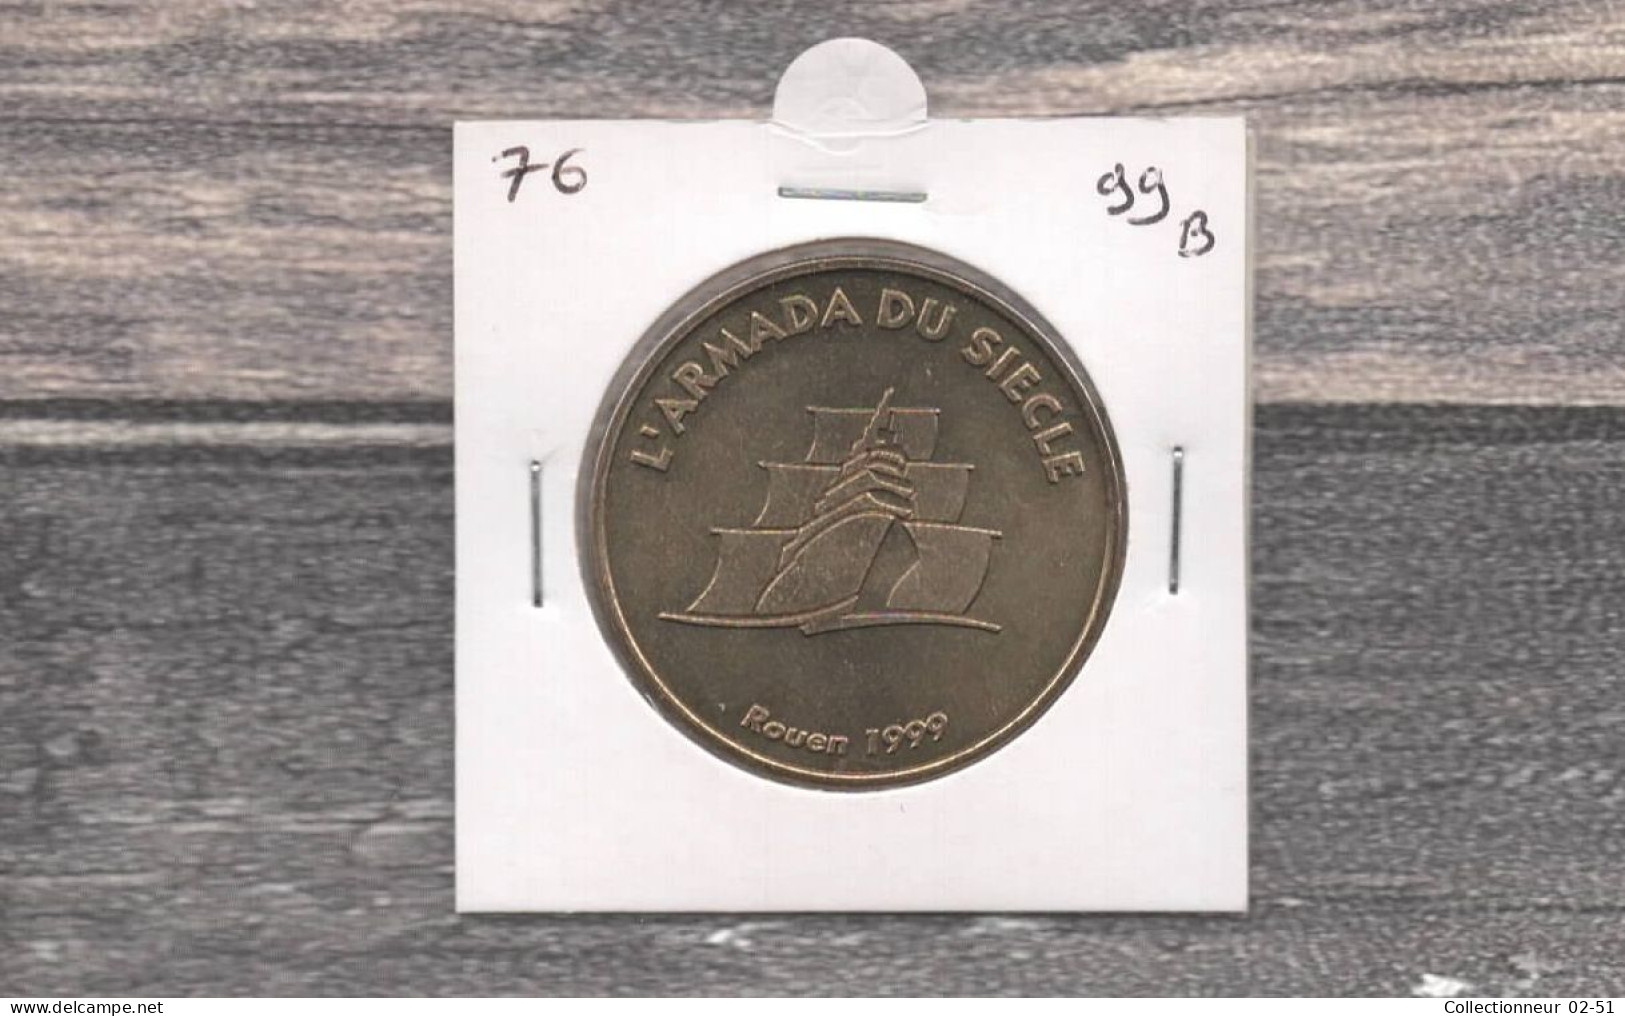 Monnaie De Paris : L'Armada Du Siècle - 1999 - Zonder Datum